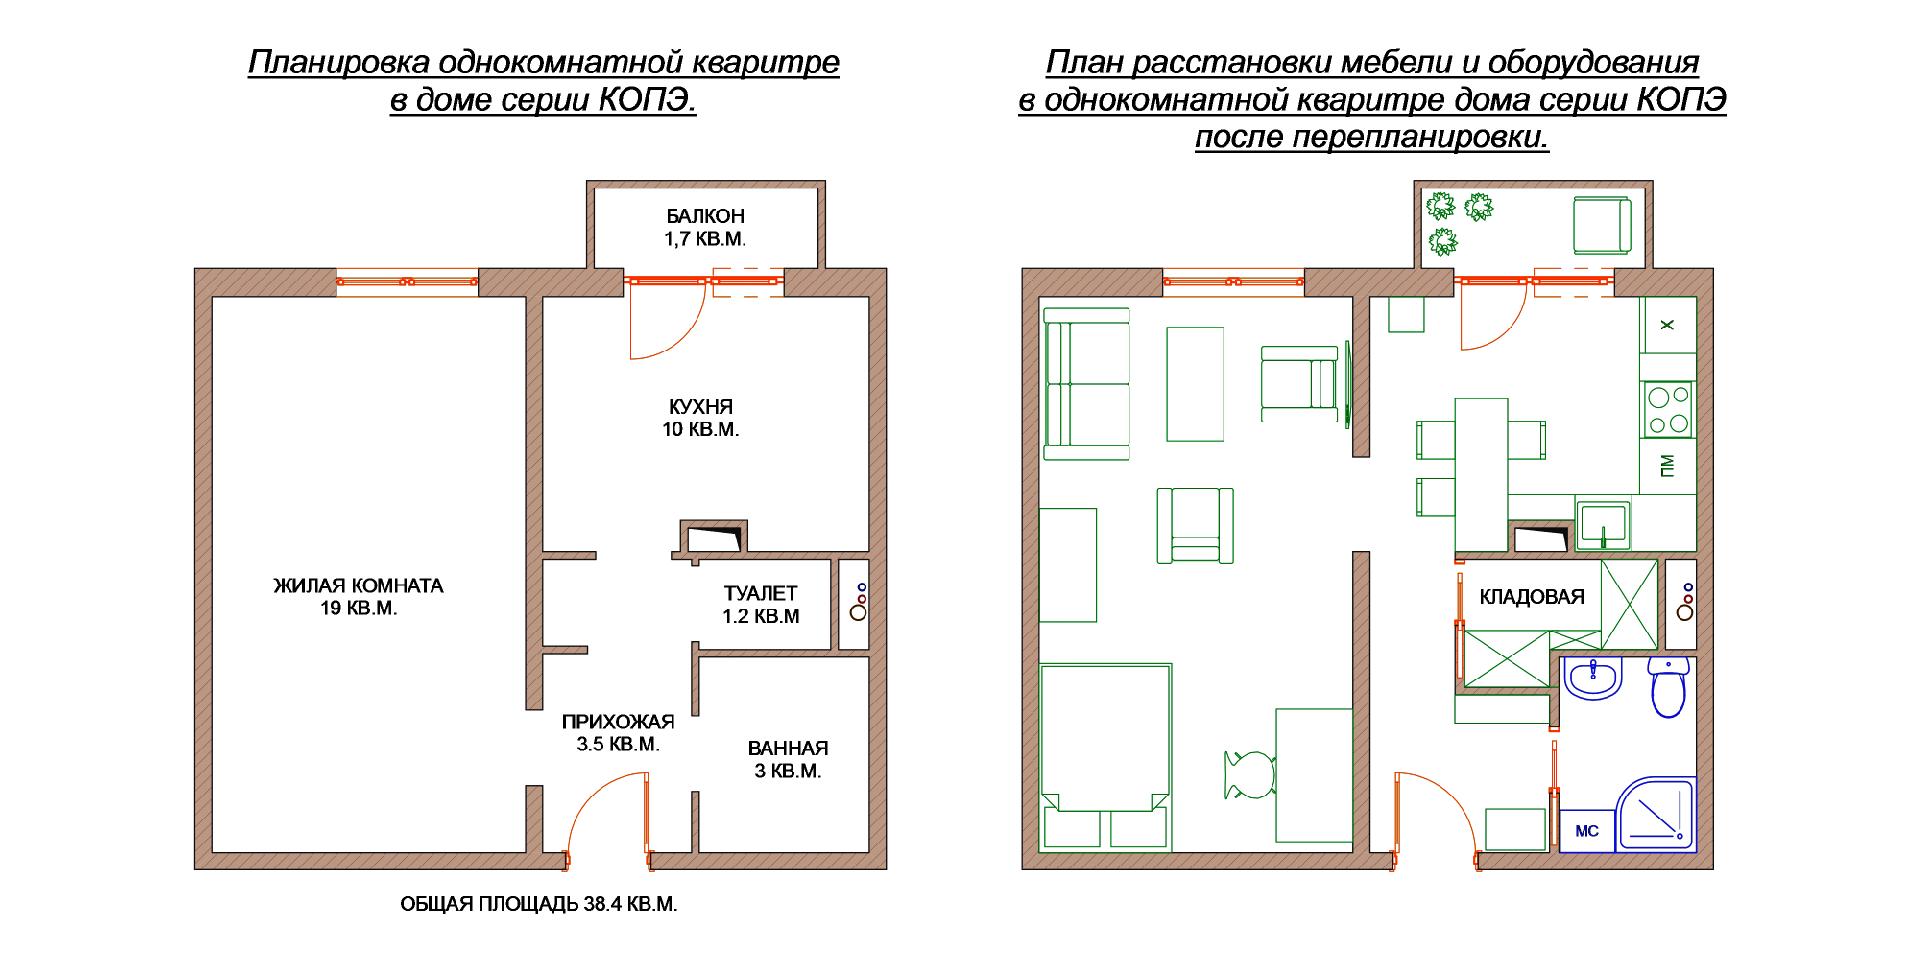 Интерьер типовой однокомнатной квартиры - только ремонт своими руками в квартире: фото, видео, инструкции